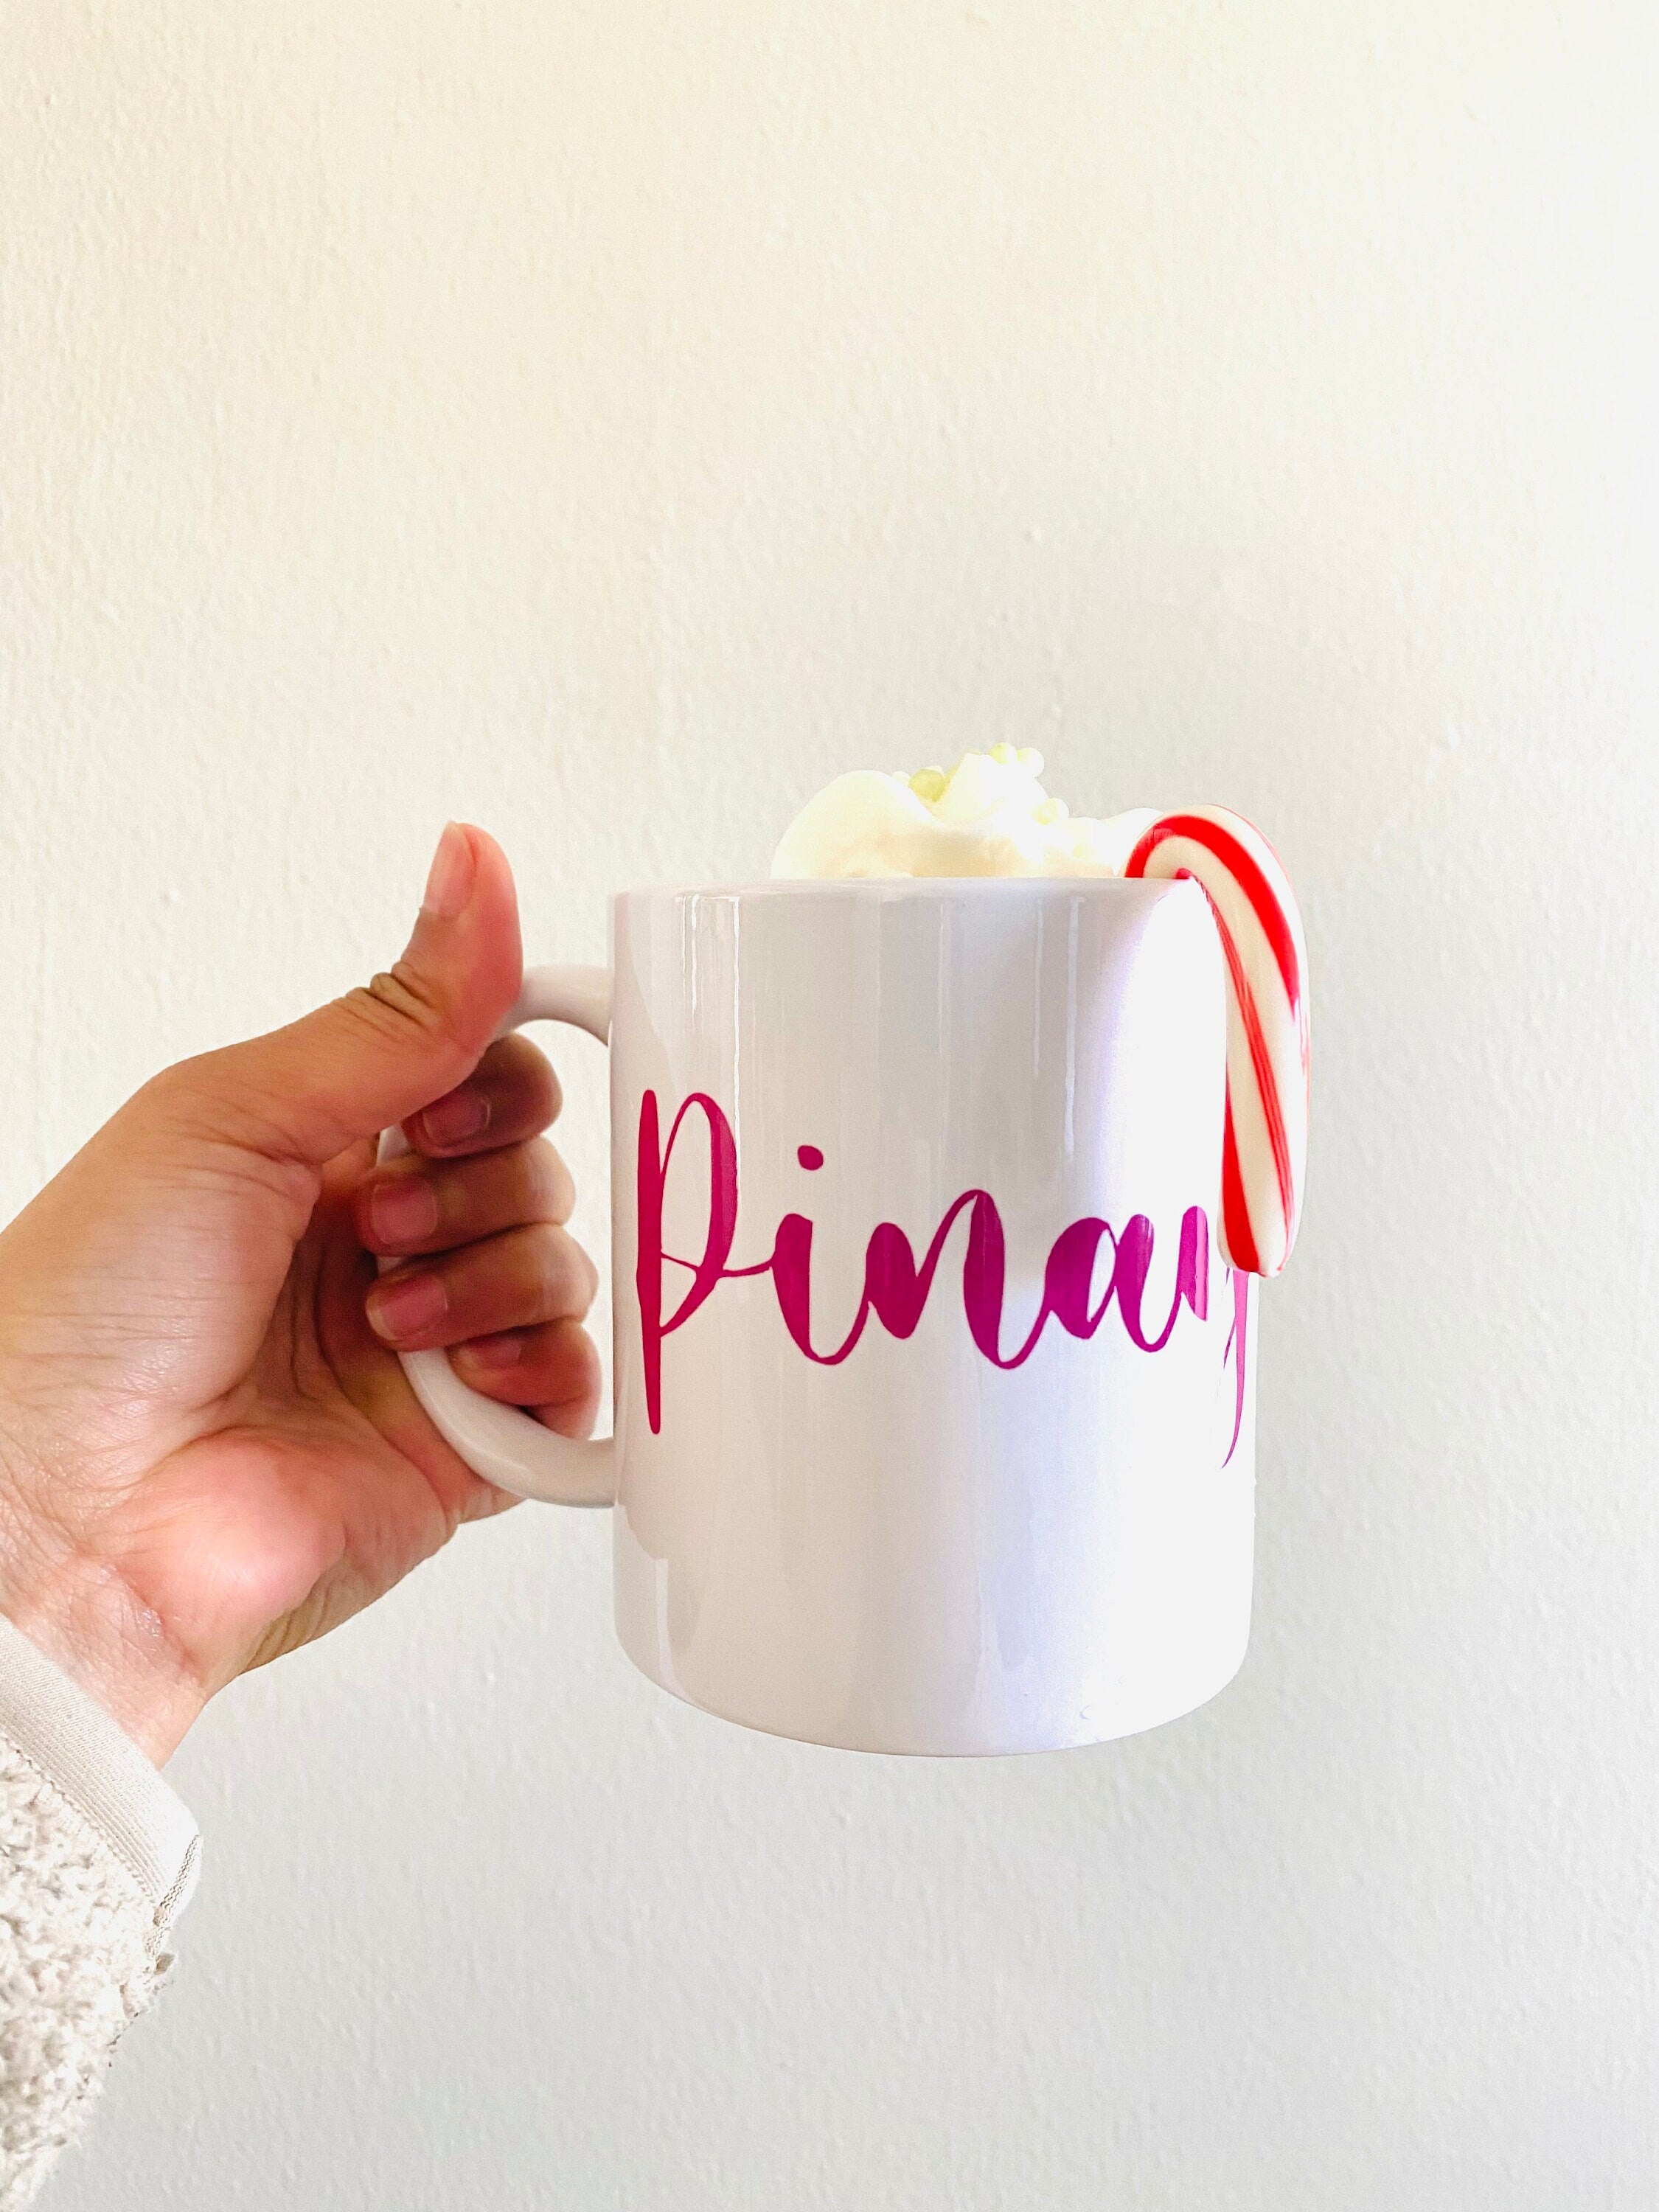 Mie Makes Pinay Mug, Coffee Mug, Tea Mug, 12 Oz Mug, Pink Pinay Mug, White Ceramic Mug, Mug for Pinays, Mug for Filipino, Mug for her, Microwave Safe